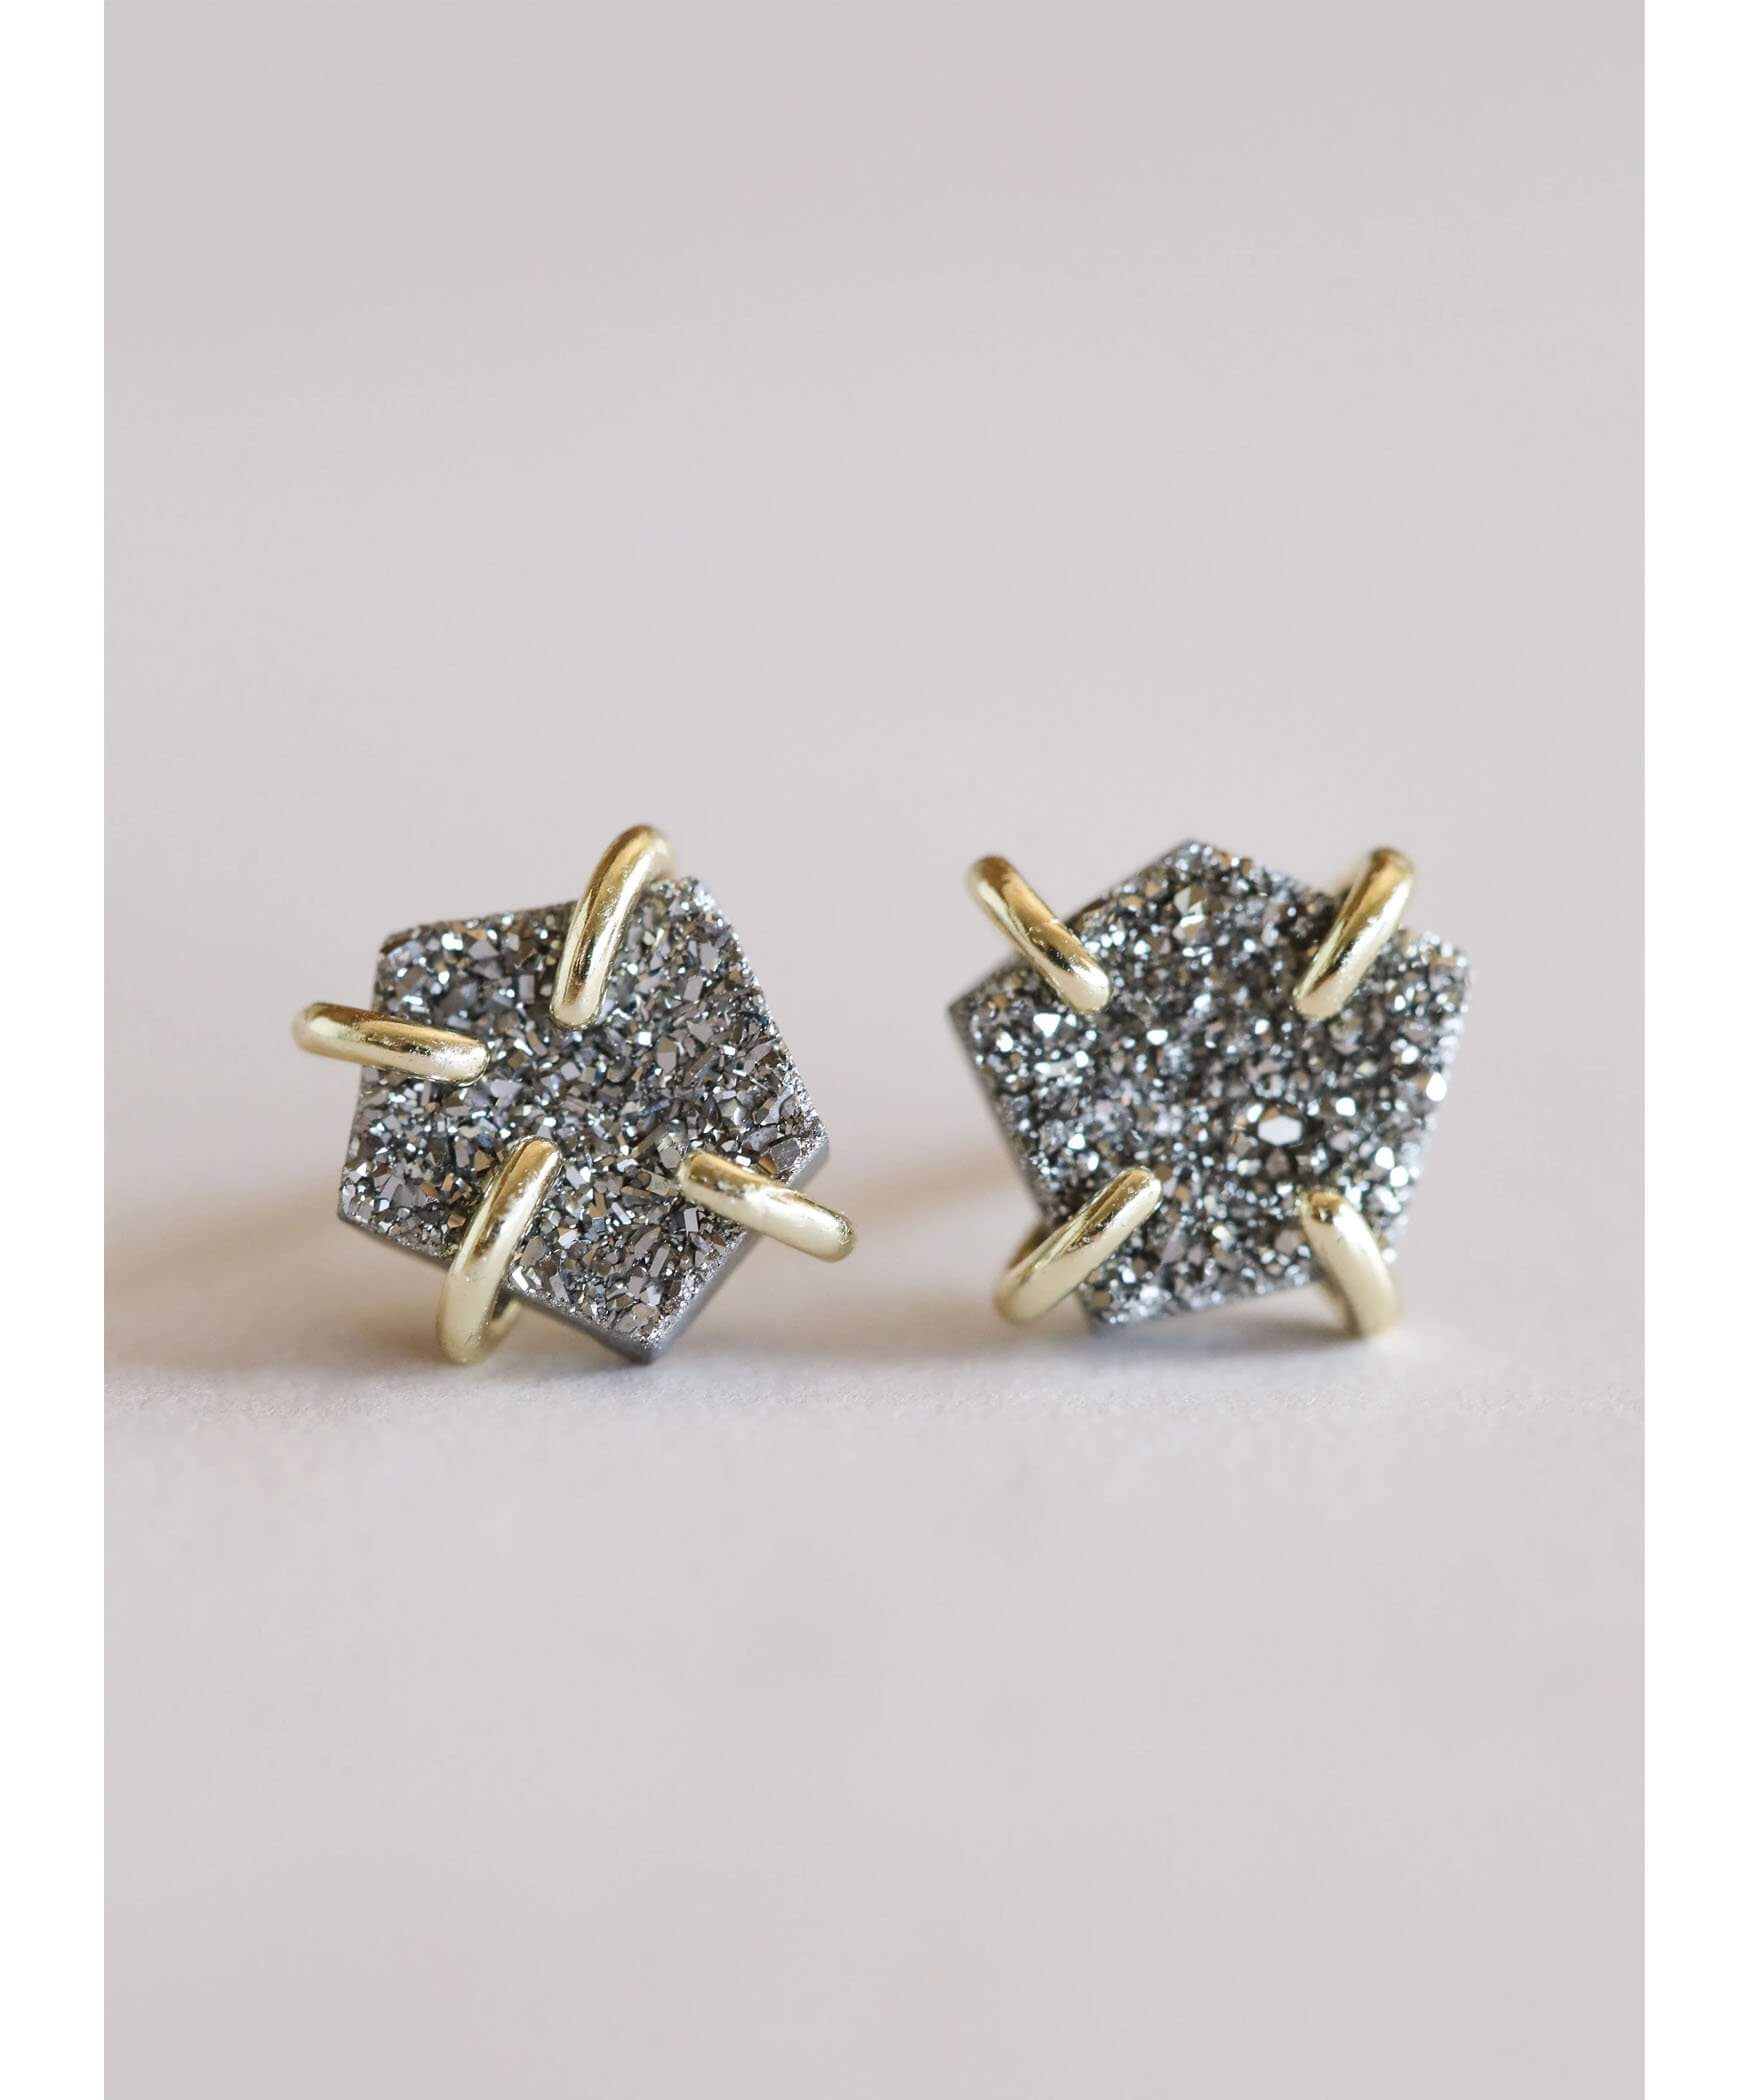 Silver Druzy Prong Earrings